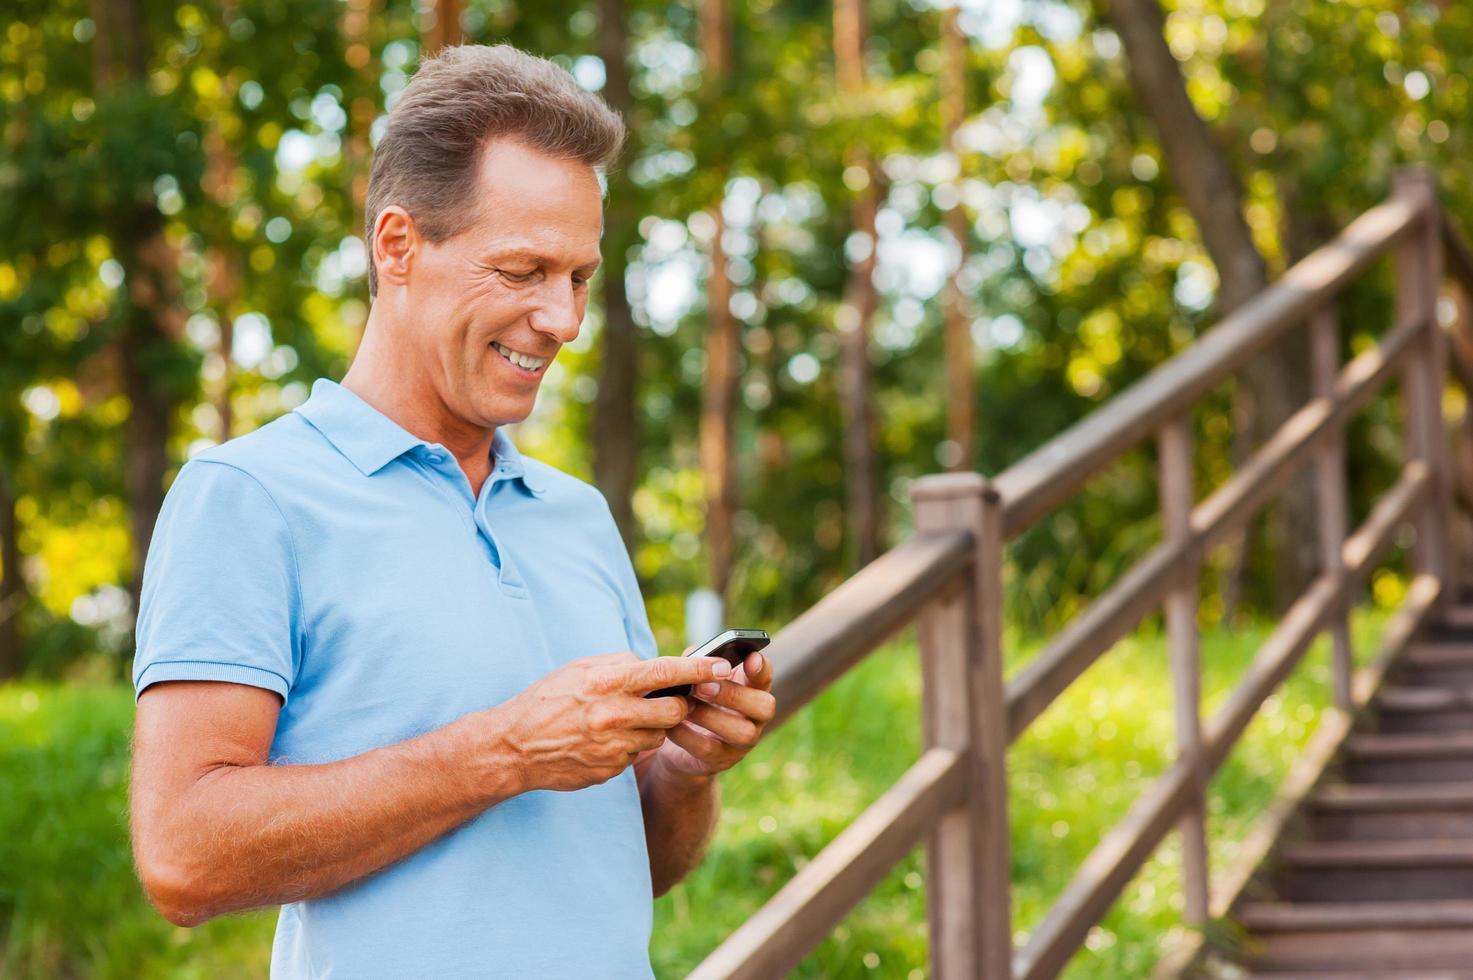 examinando seu novo telefone inteligente. alegre homem maduro segurando o celular e olhando para ele com um sorriso em pé na escada de madeira foto